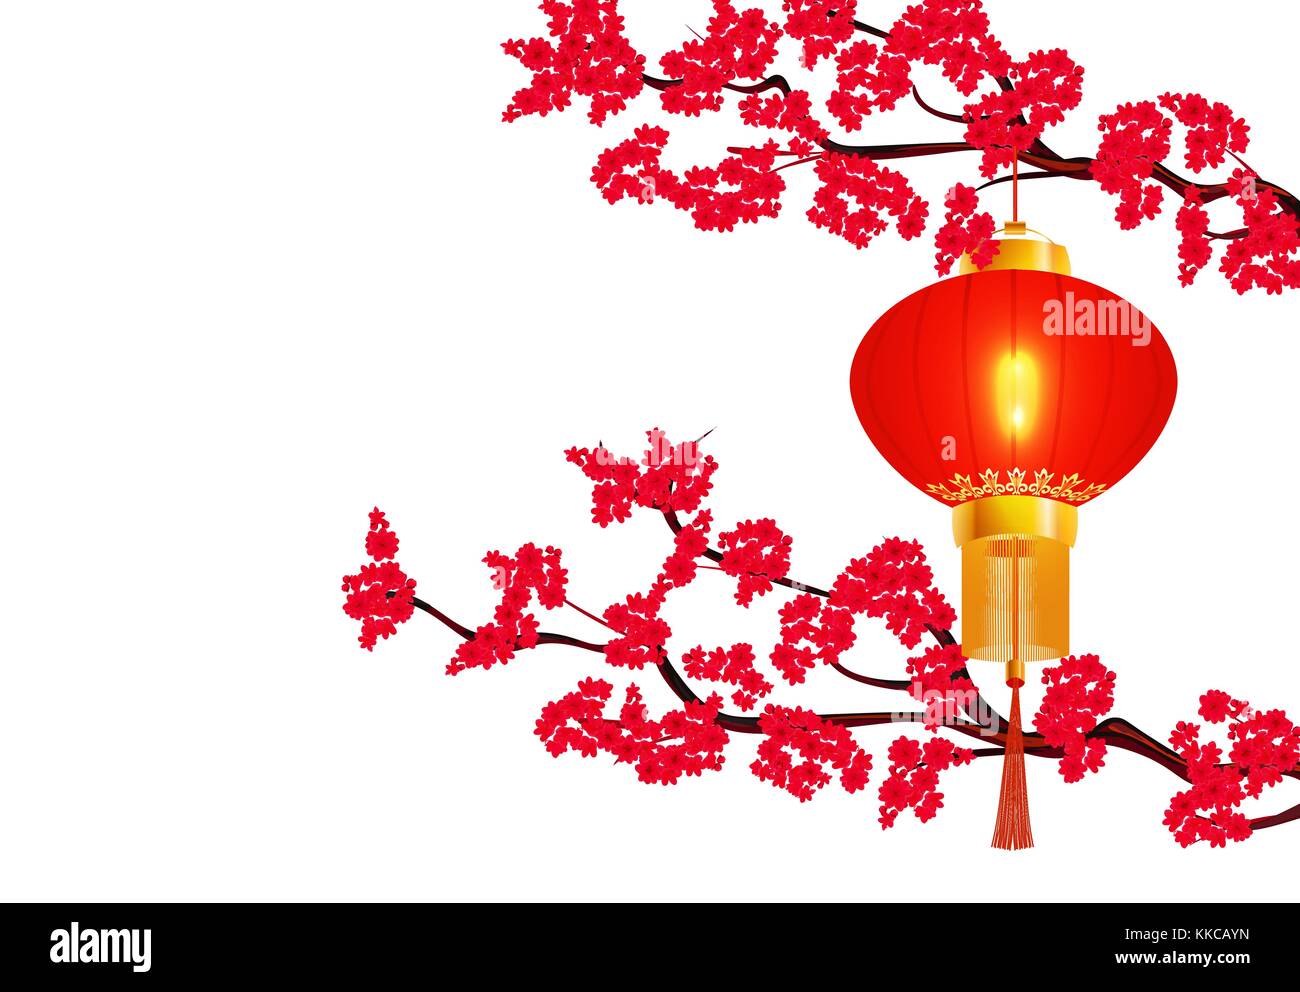 Chinesisches neues Jahr. zwei Zweigen einer blühende rote Kirsche. hängende rote chinesische Laterne. runde Form. Abbildung Stock Vektor